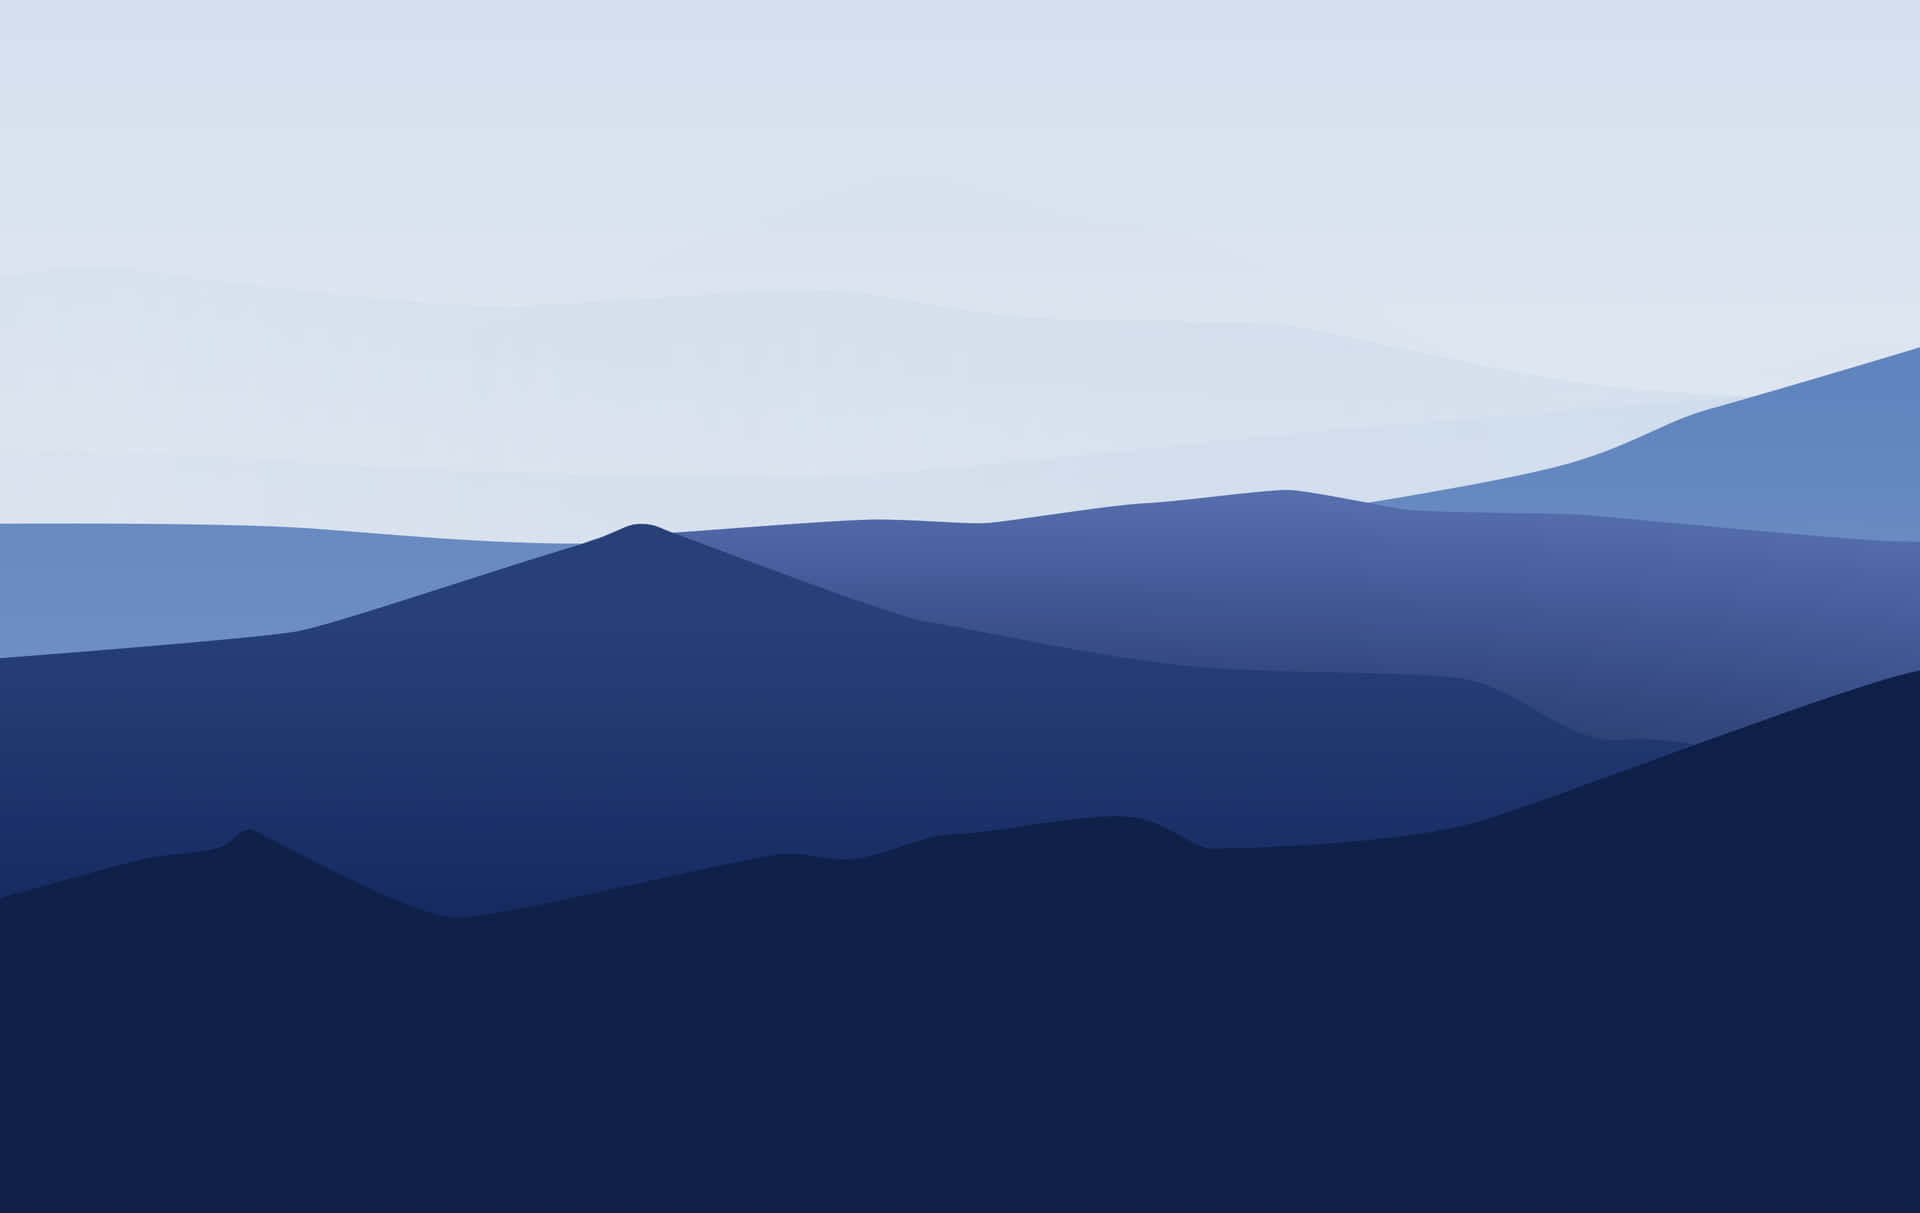 Imponentemontaña Azul Cumbre En El Horizonte Brumoso. Fondo de pantalla